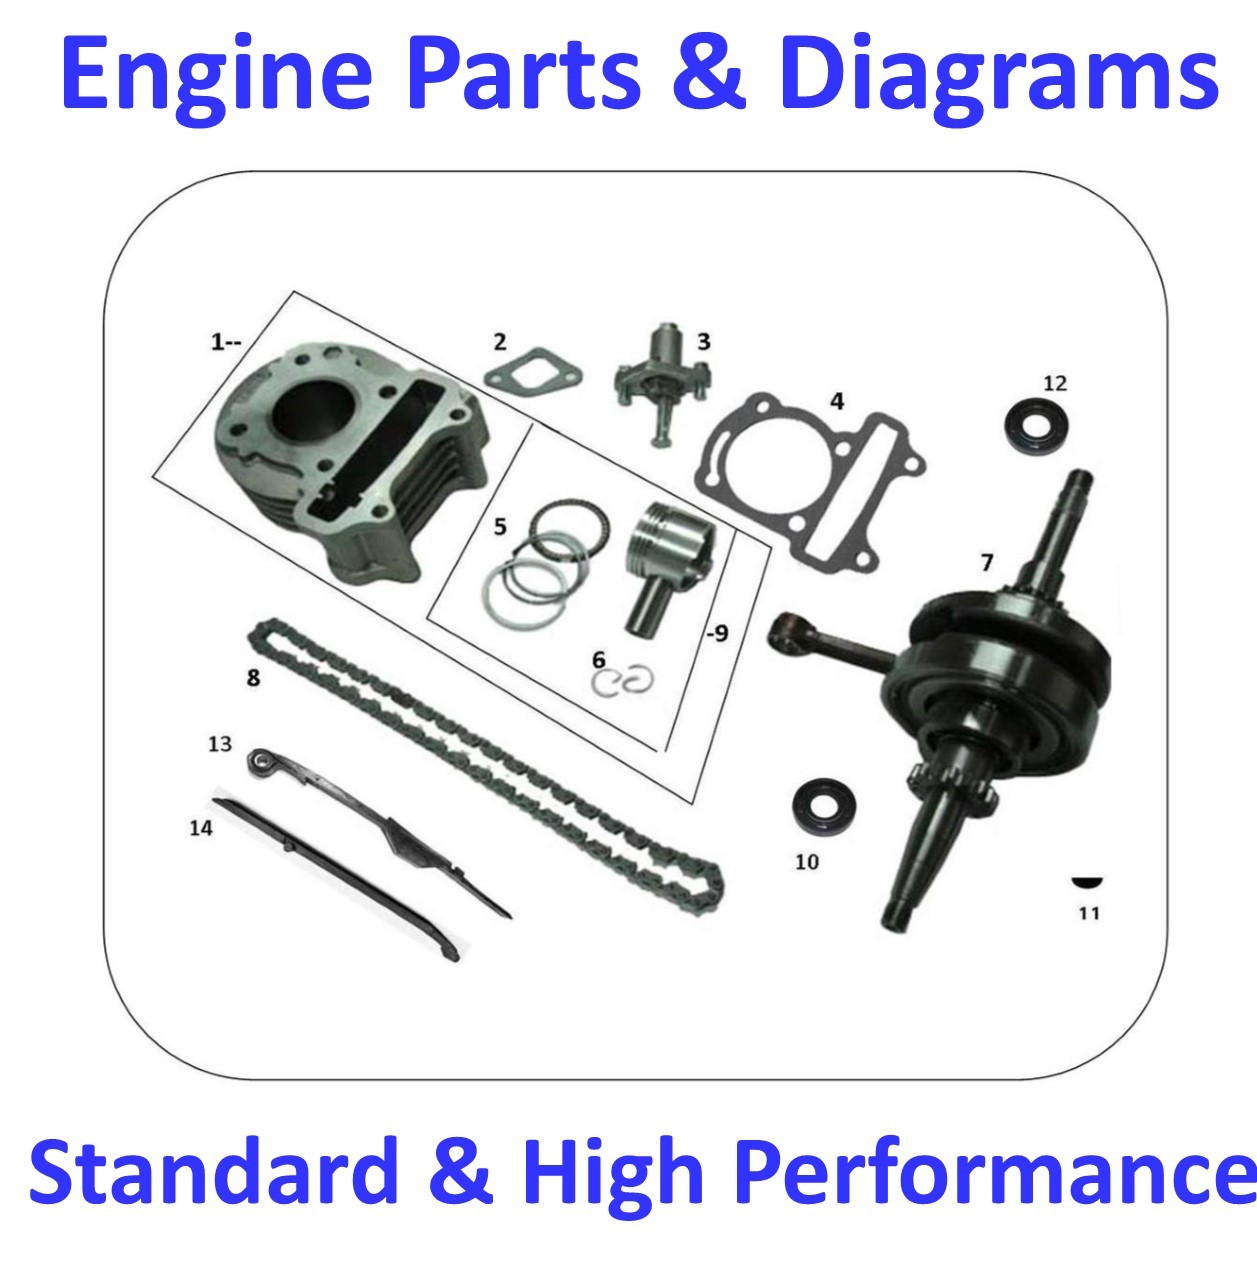 Engine Parts & Diagrams